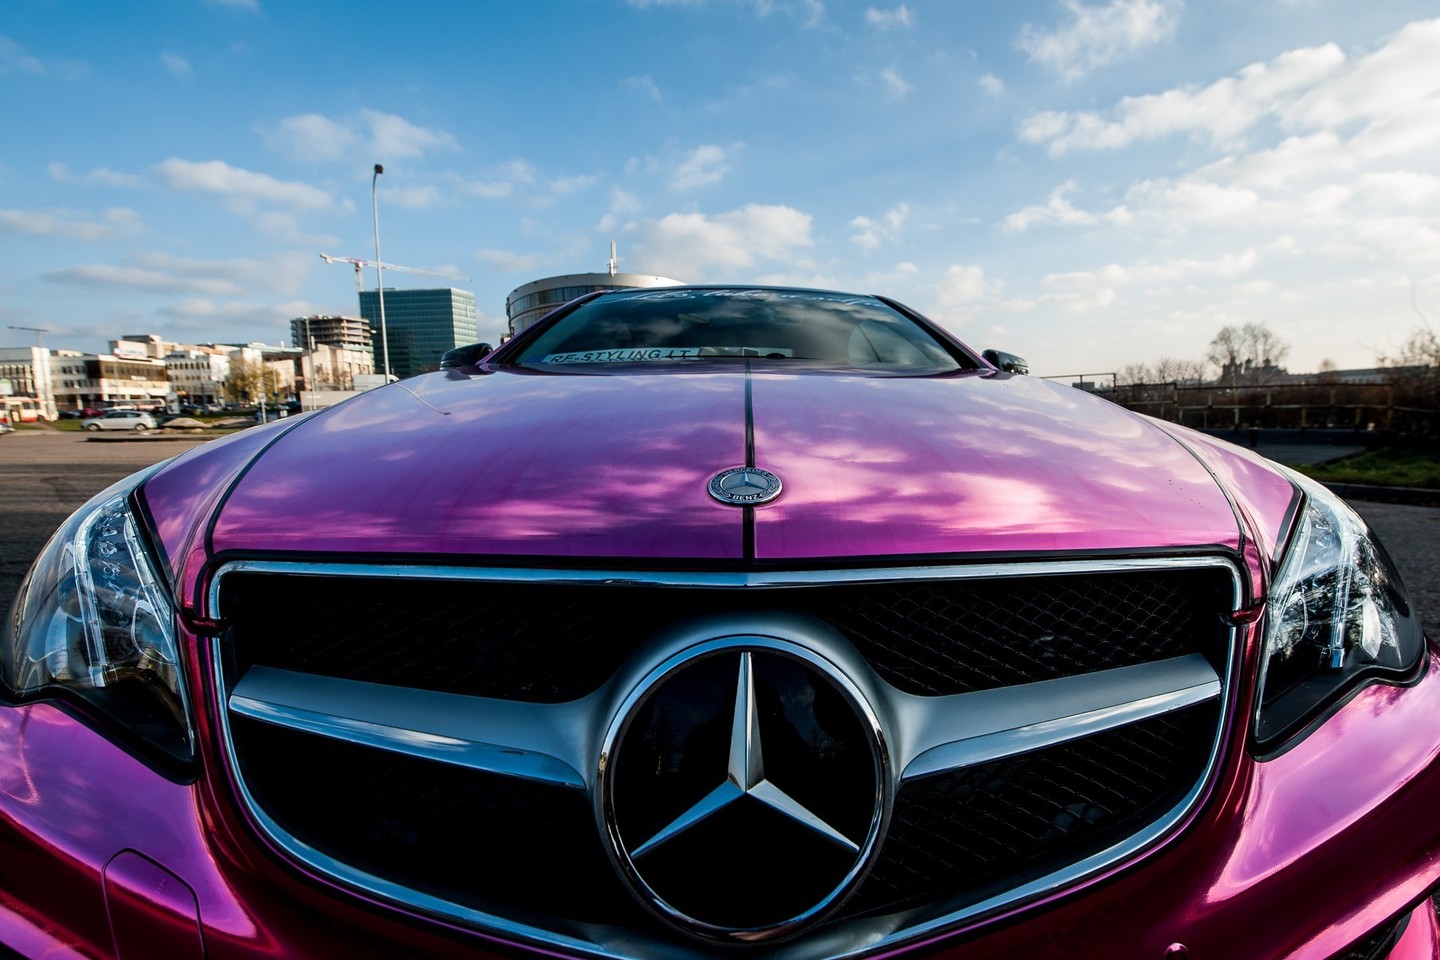 Net dviem plėvelės sluoksniais apklijuotas E klasės „Mercedes-Benz“ kupė tapo iš juodo tapo rožinis.<br>Vlado Ščiavinsko nuotr.